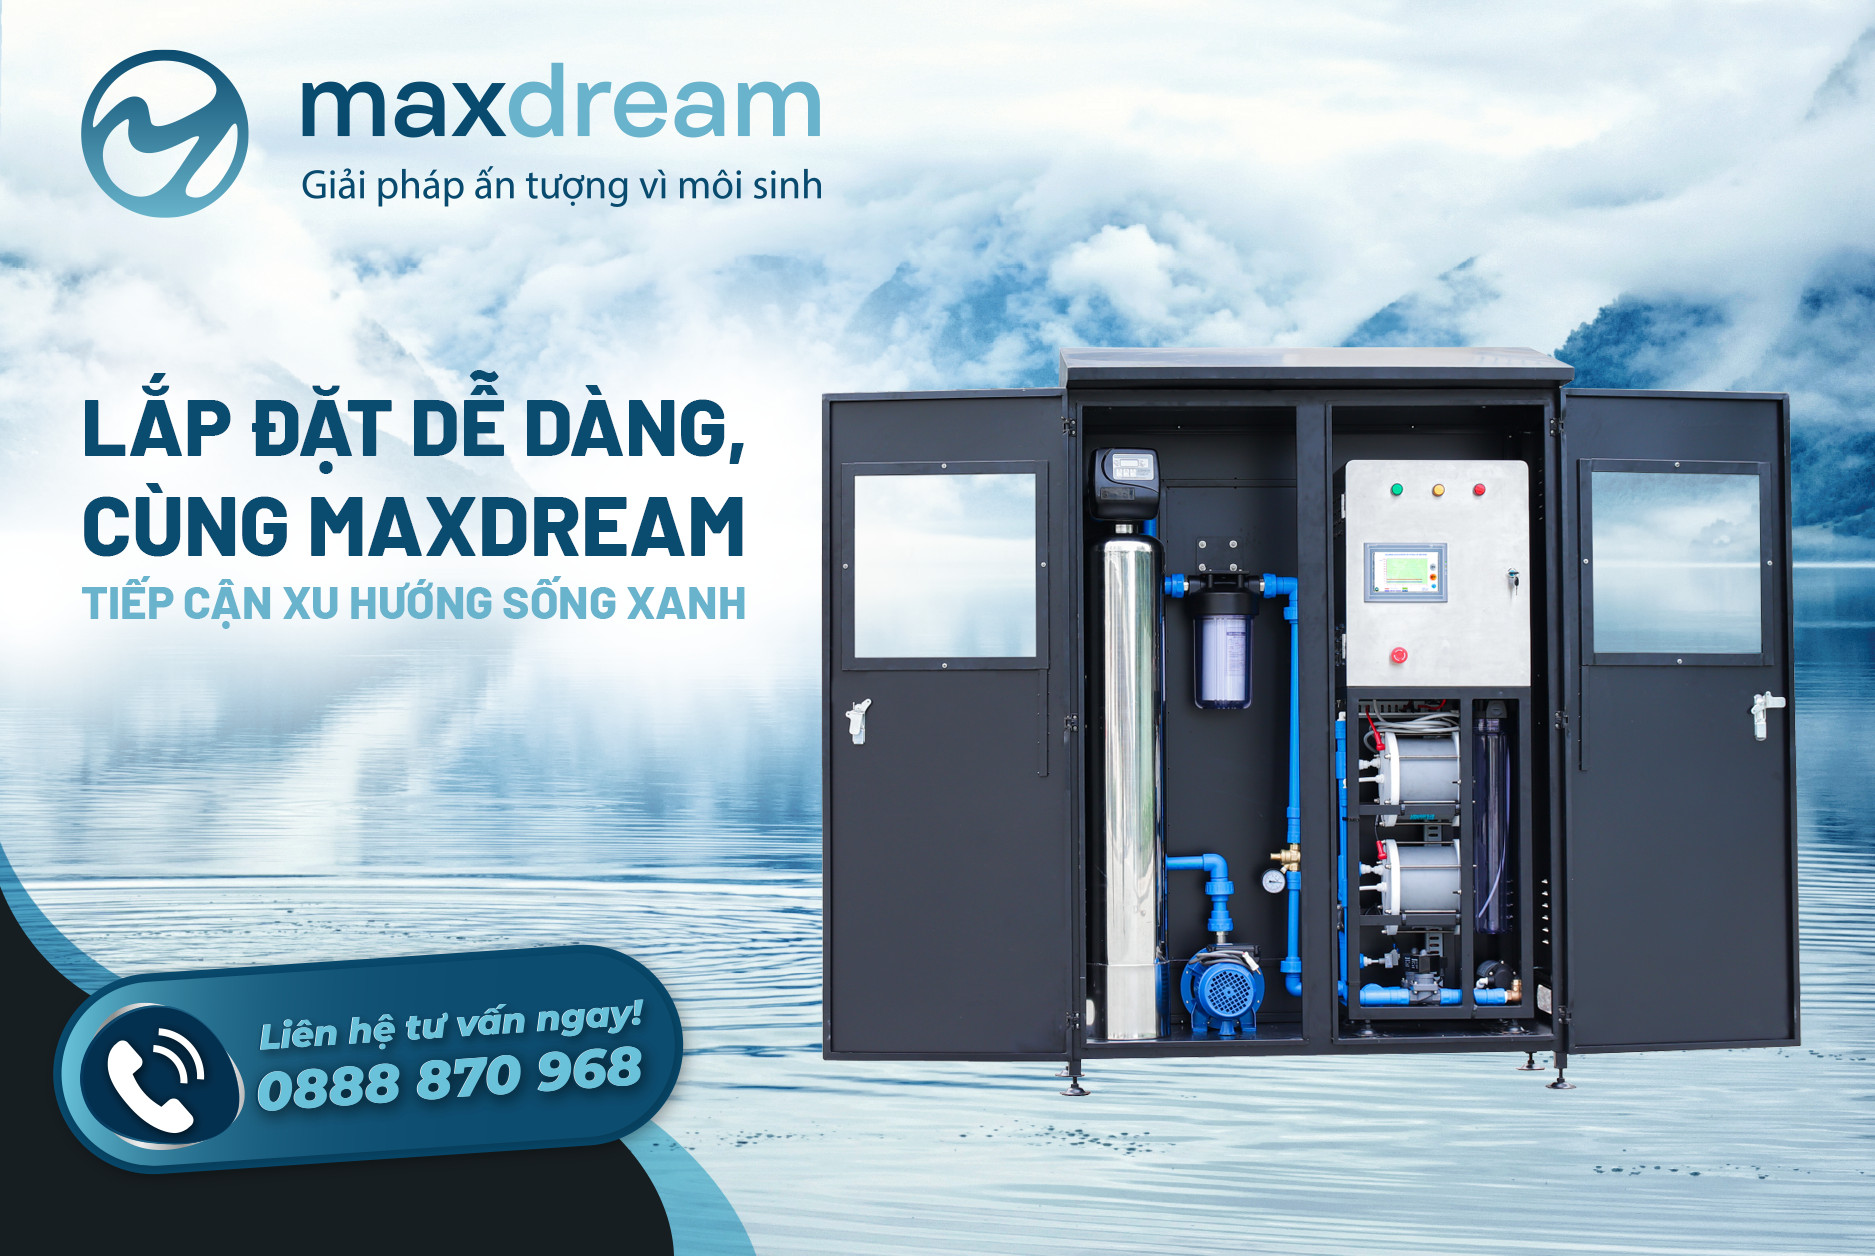 Máy lọc nước của Maxdream lắp đặt dễ dàng